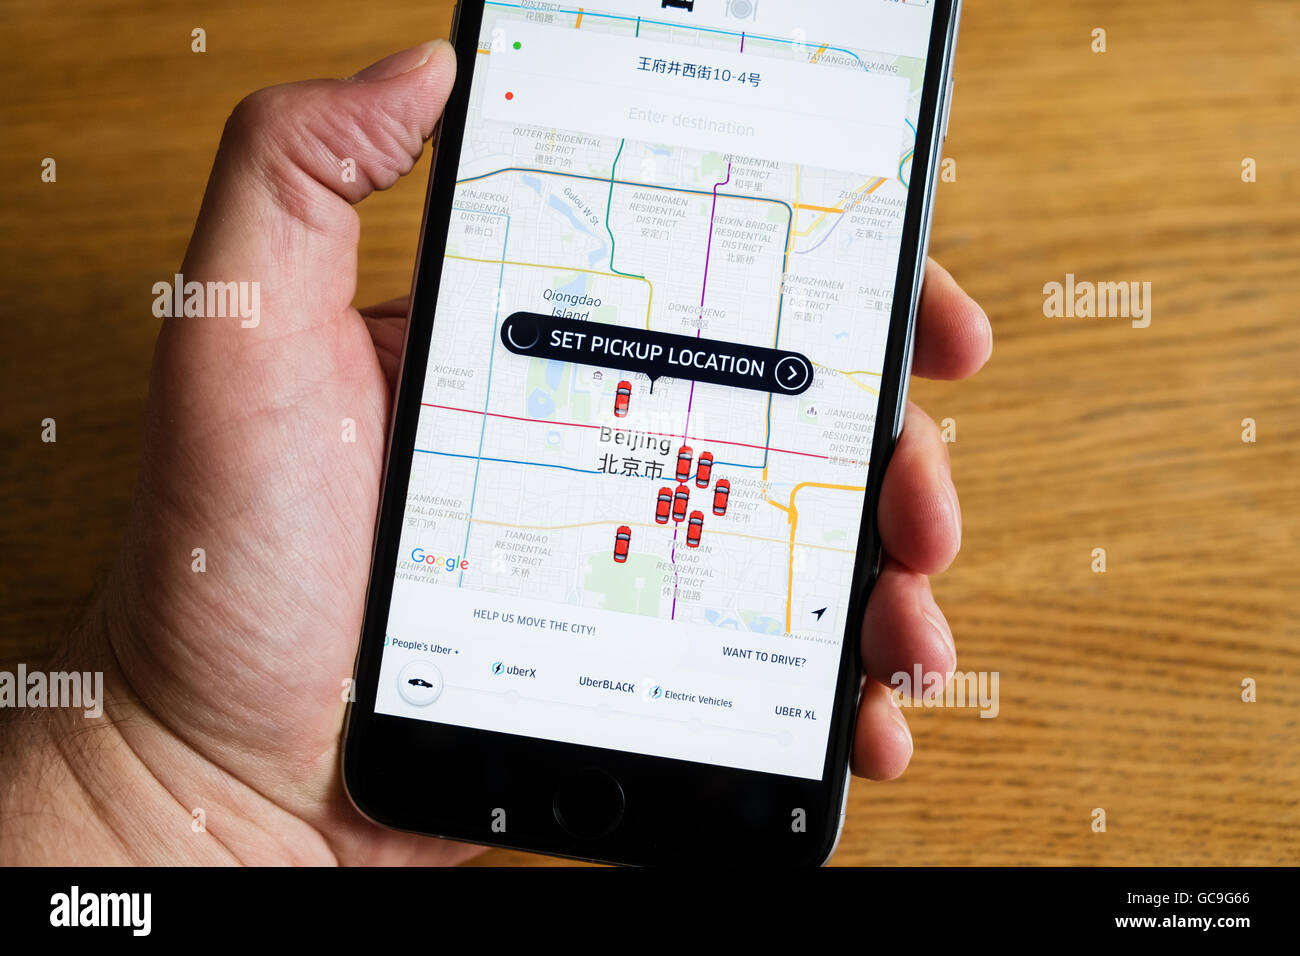 Reserva de taxi Uber app mostrando Beijing China en el iPhone 6 teléfono inteligente. Foto de stock